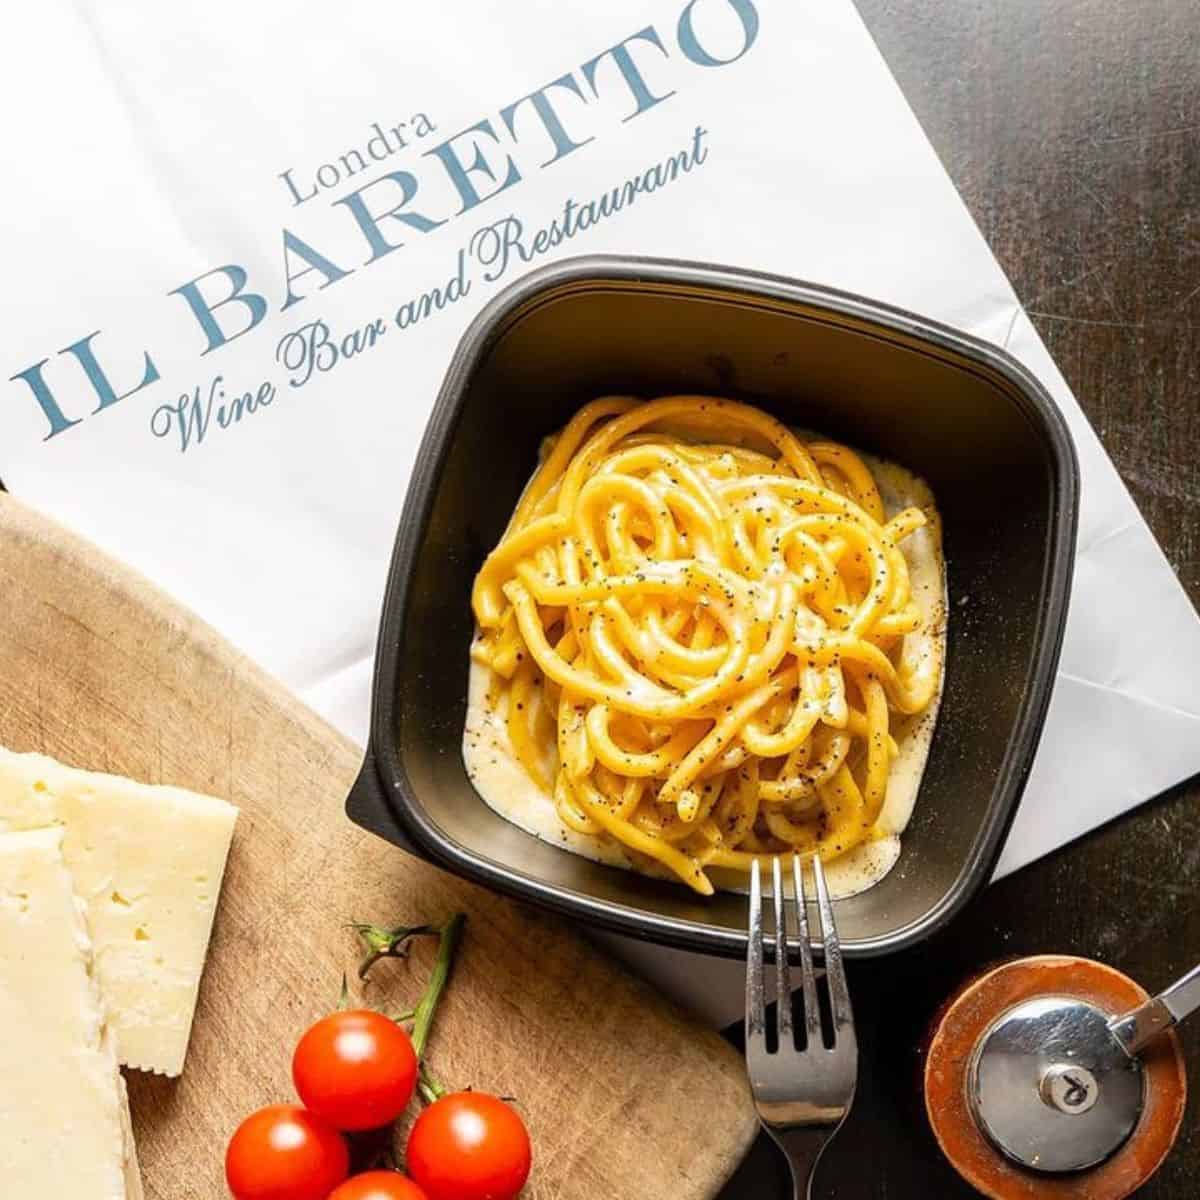 bigolo cacio e pepe Il Baretto best Italian restaurant in Marylebone